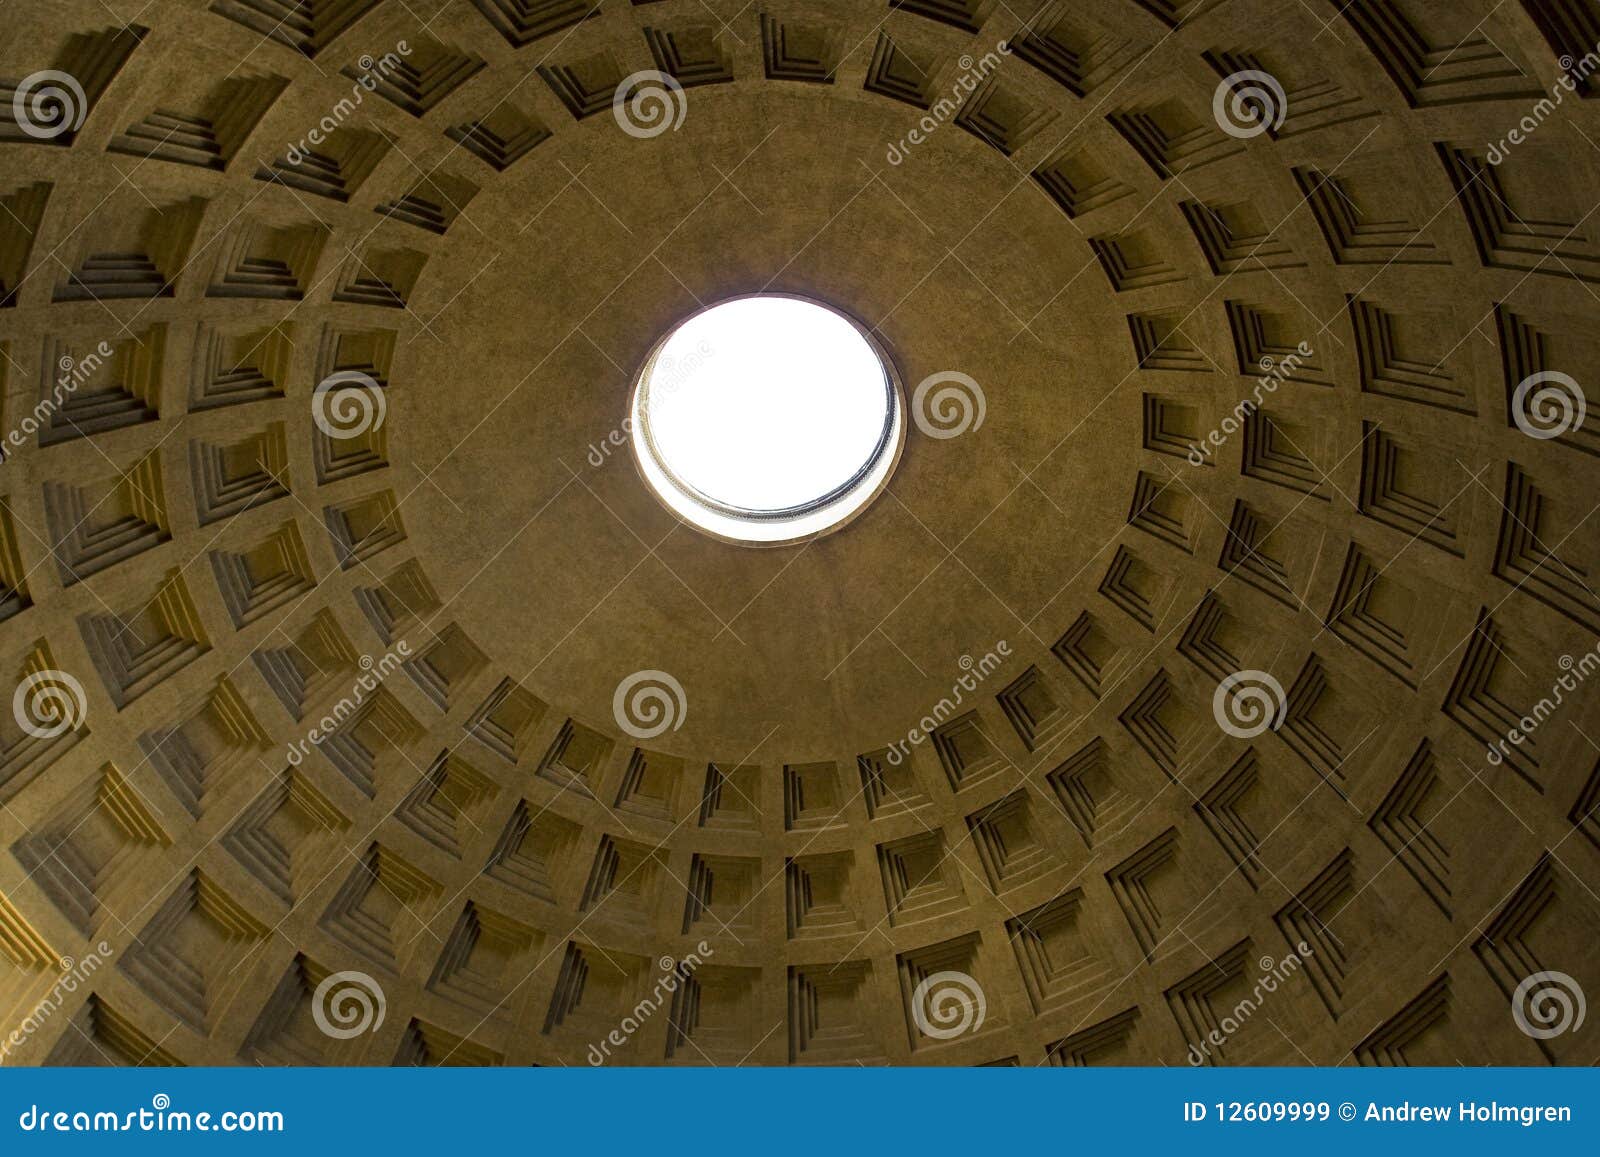 pantheon oculus